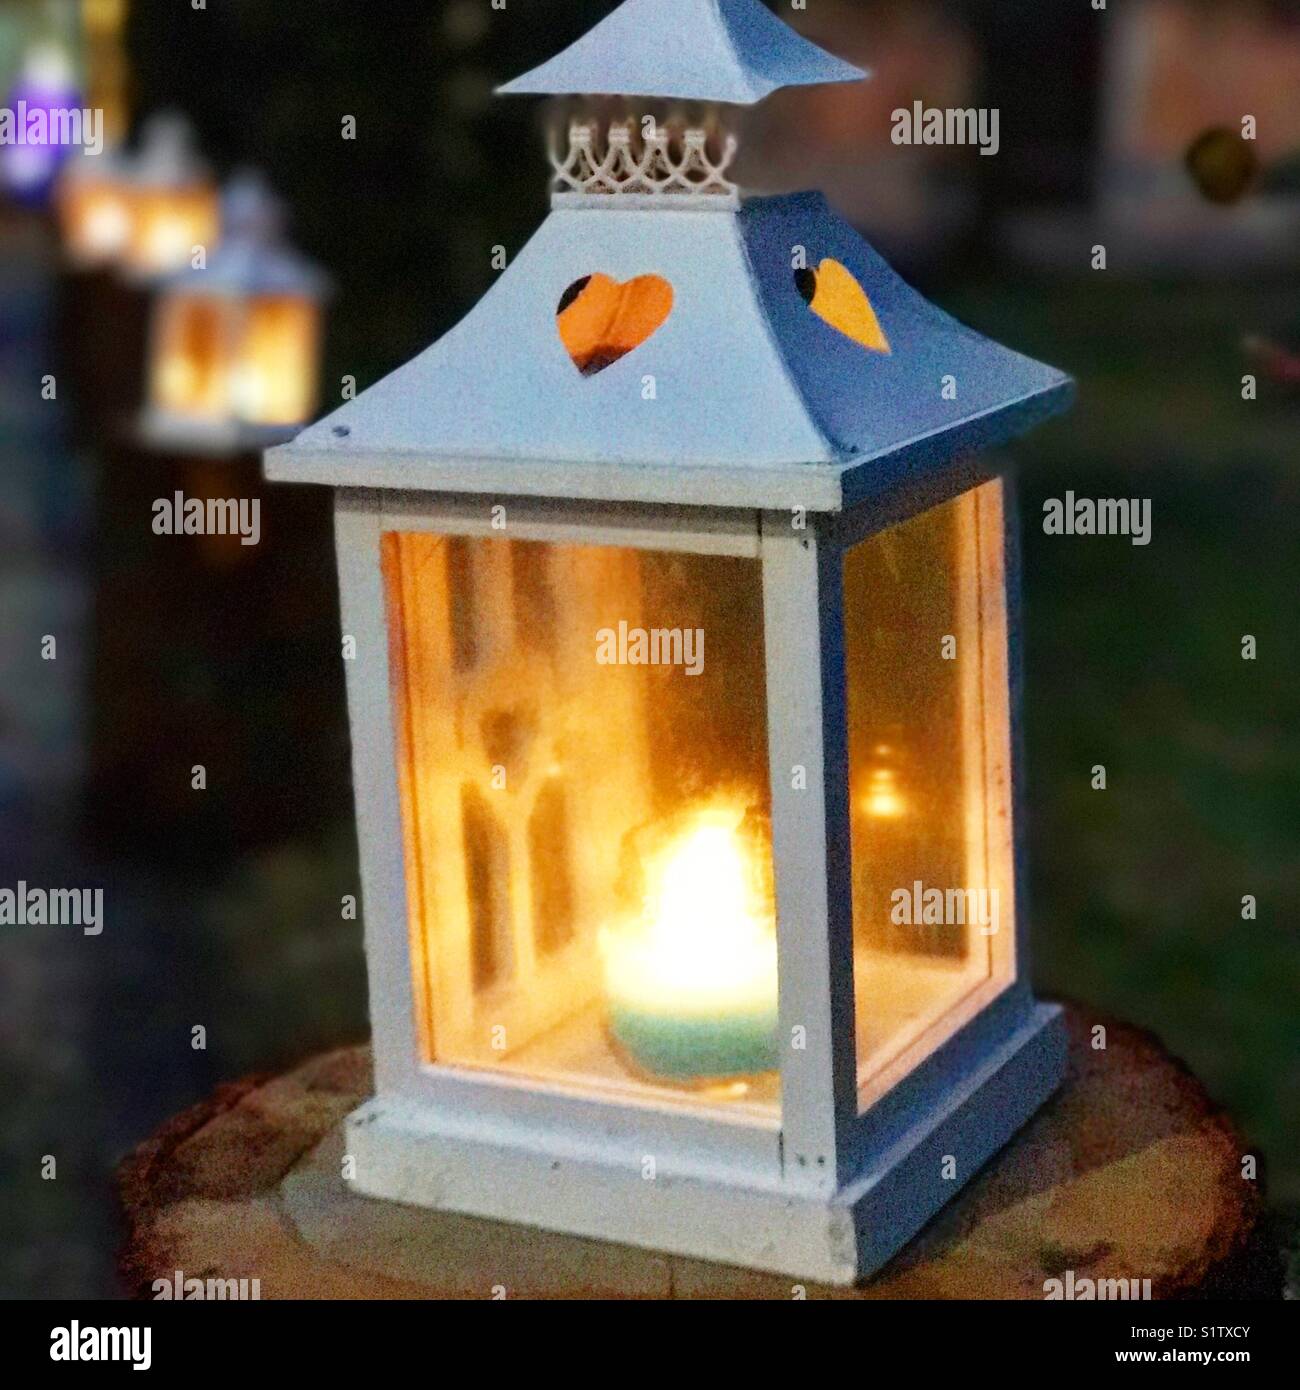 La lumière d'une bougie à l'intérieur d'une lanterne dans un jardin à l'extérieur à l'heure bleue Banque D'Images